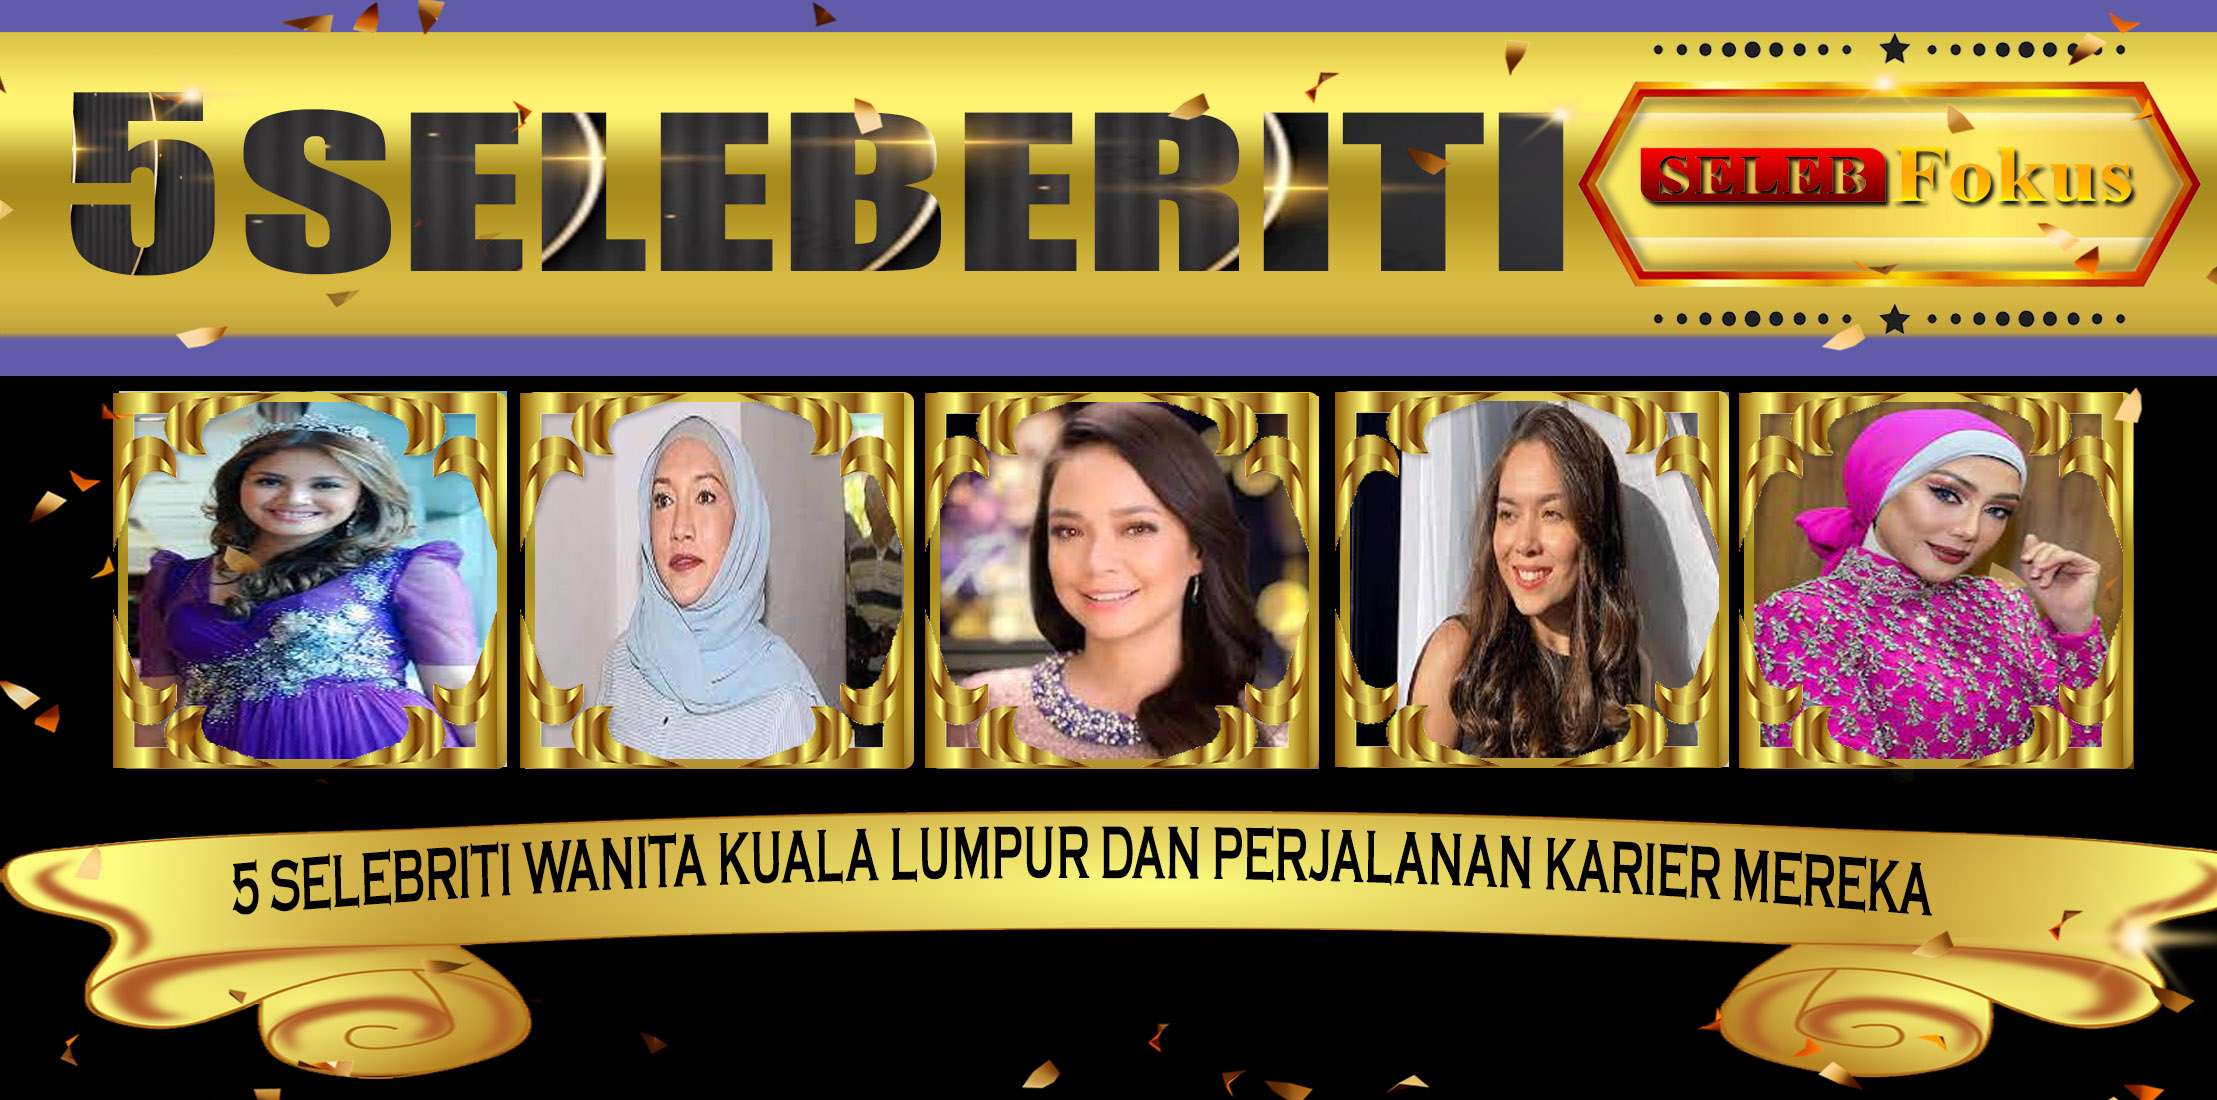 5 Selebriti Wanita KualaLumpur dan Perjalanan Karier Mereka